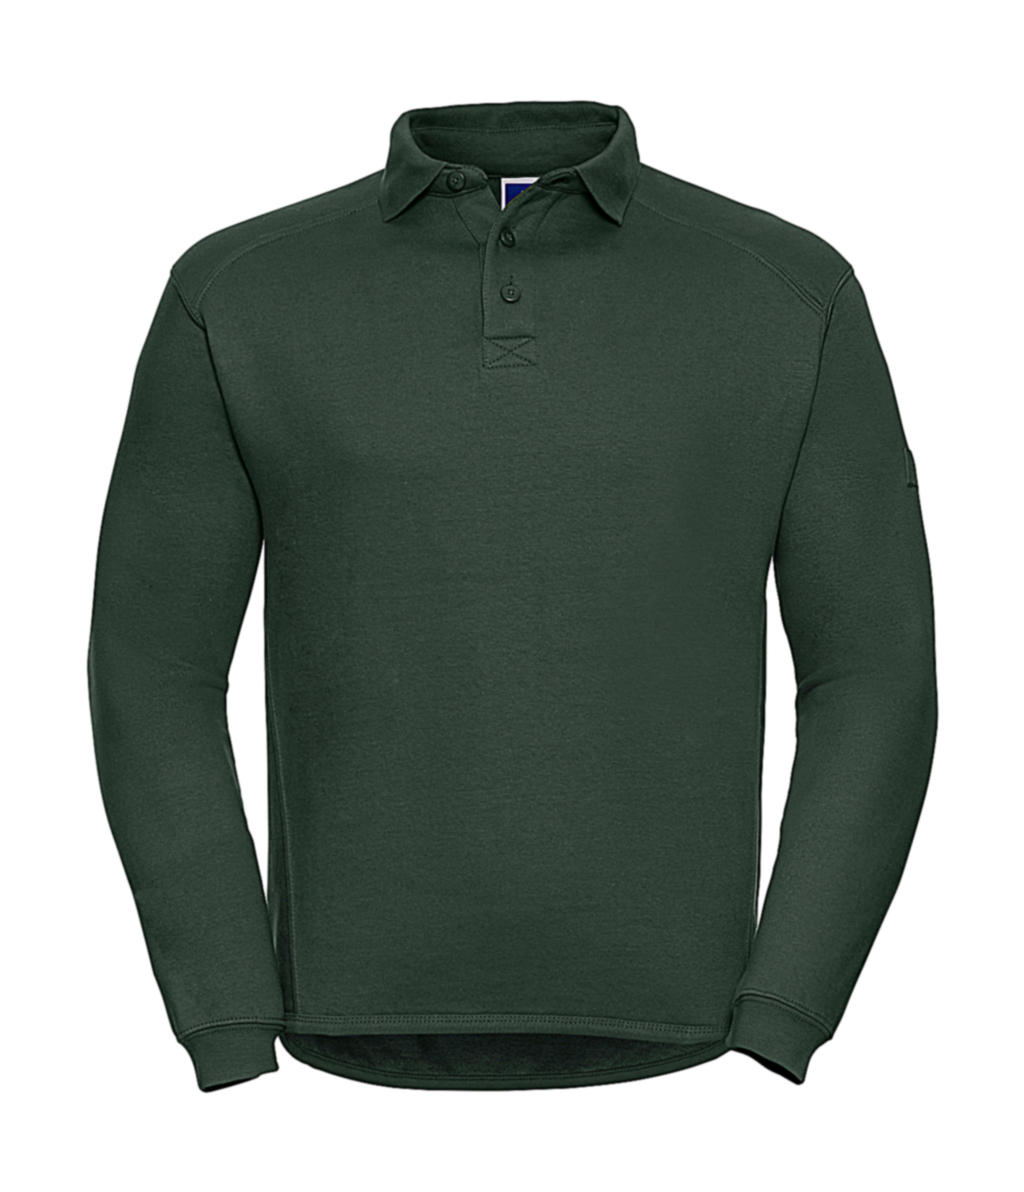  Heavy Duty Collar Sweatshirt in Farbe Bottle Green